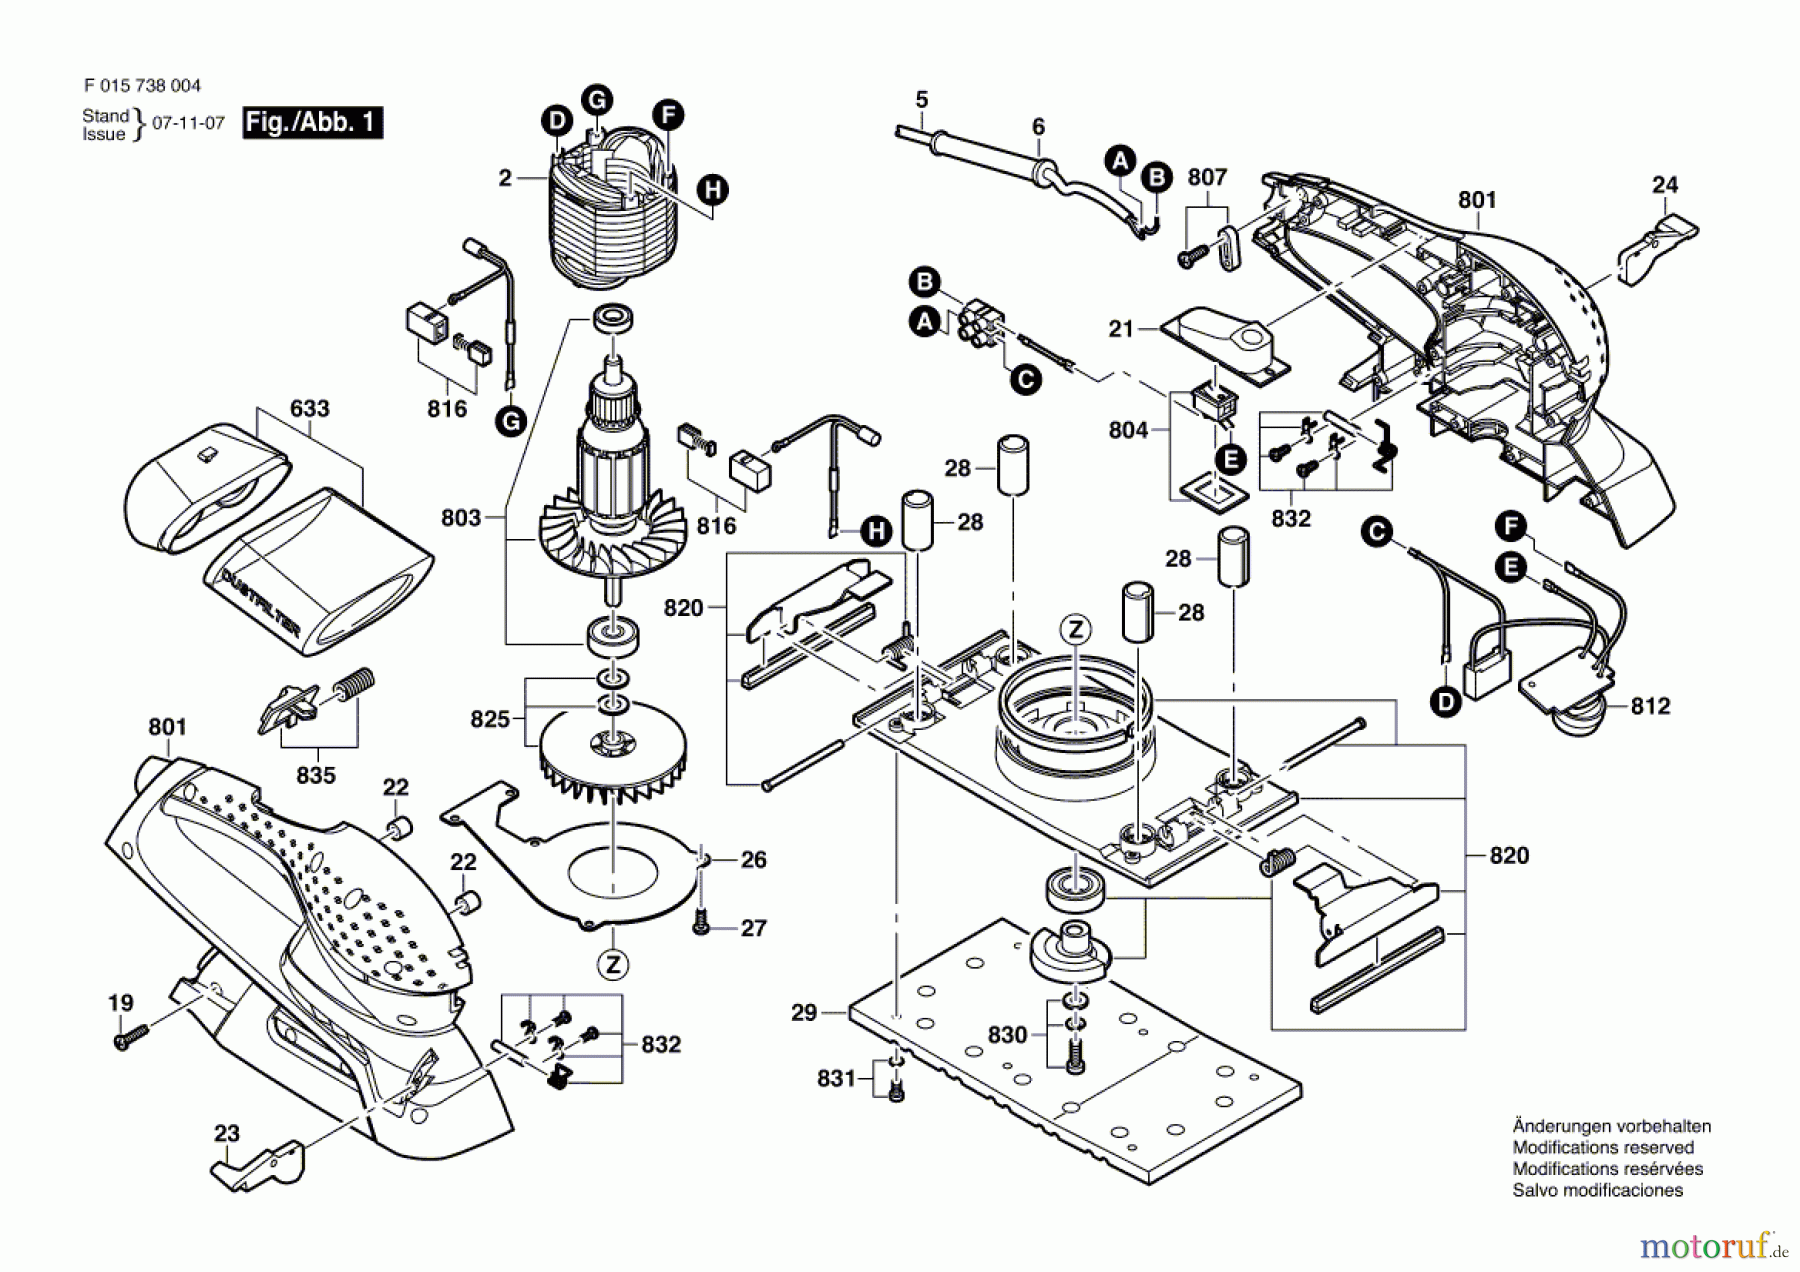  Bosch Werkzeug Schwingschleifer 7380 Seite 1